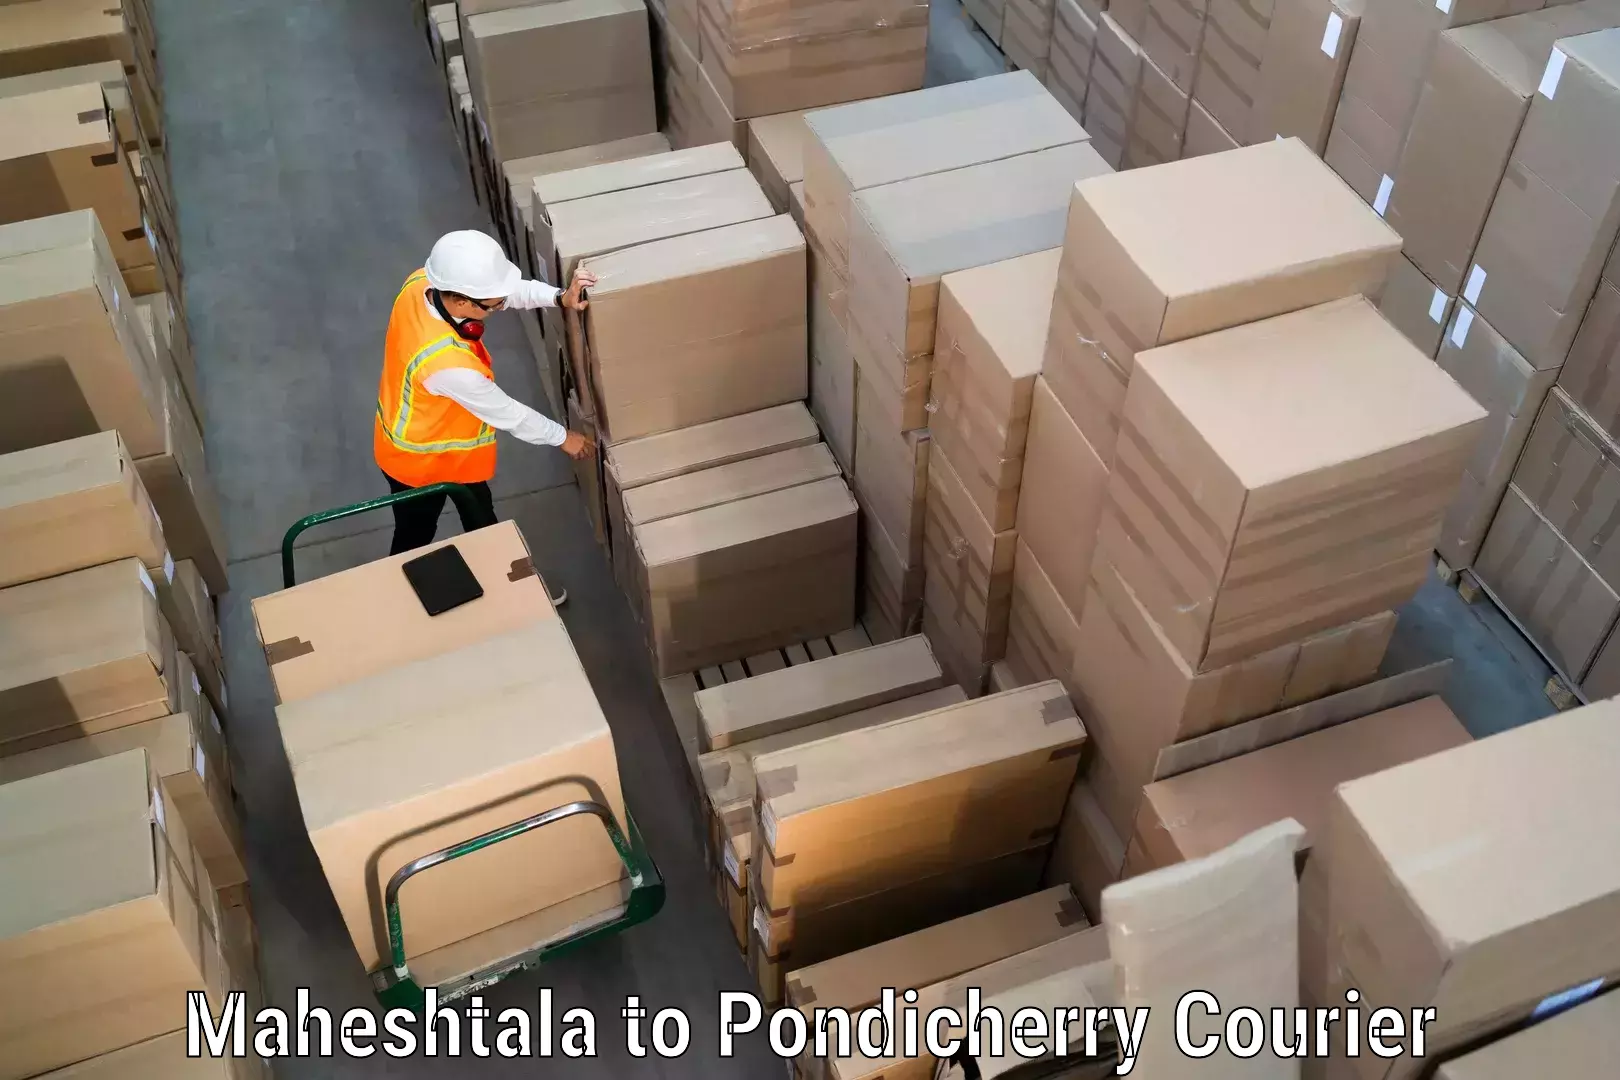 Courier service booking Maheshtala to Pondicherry University